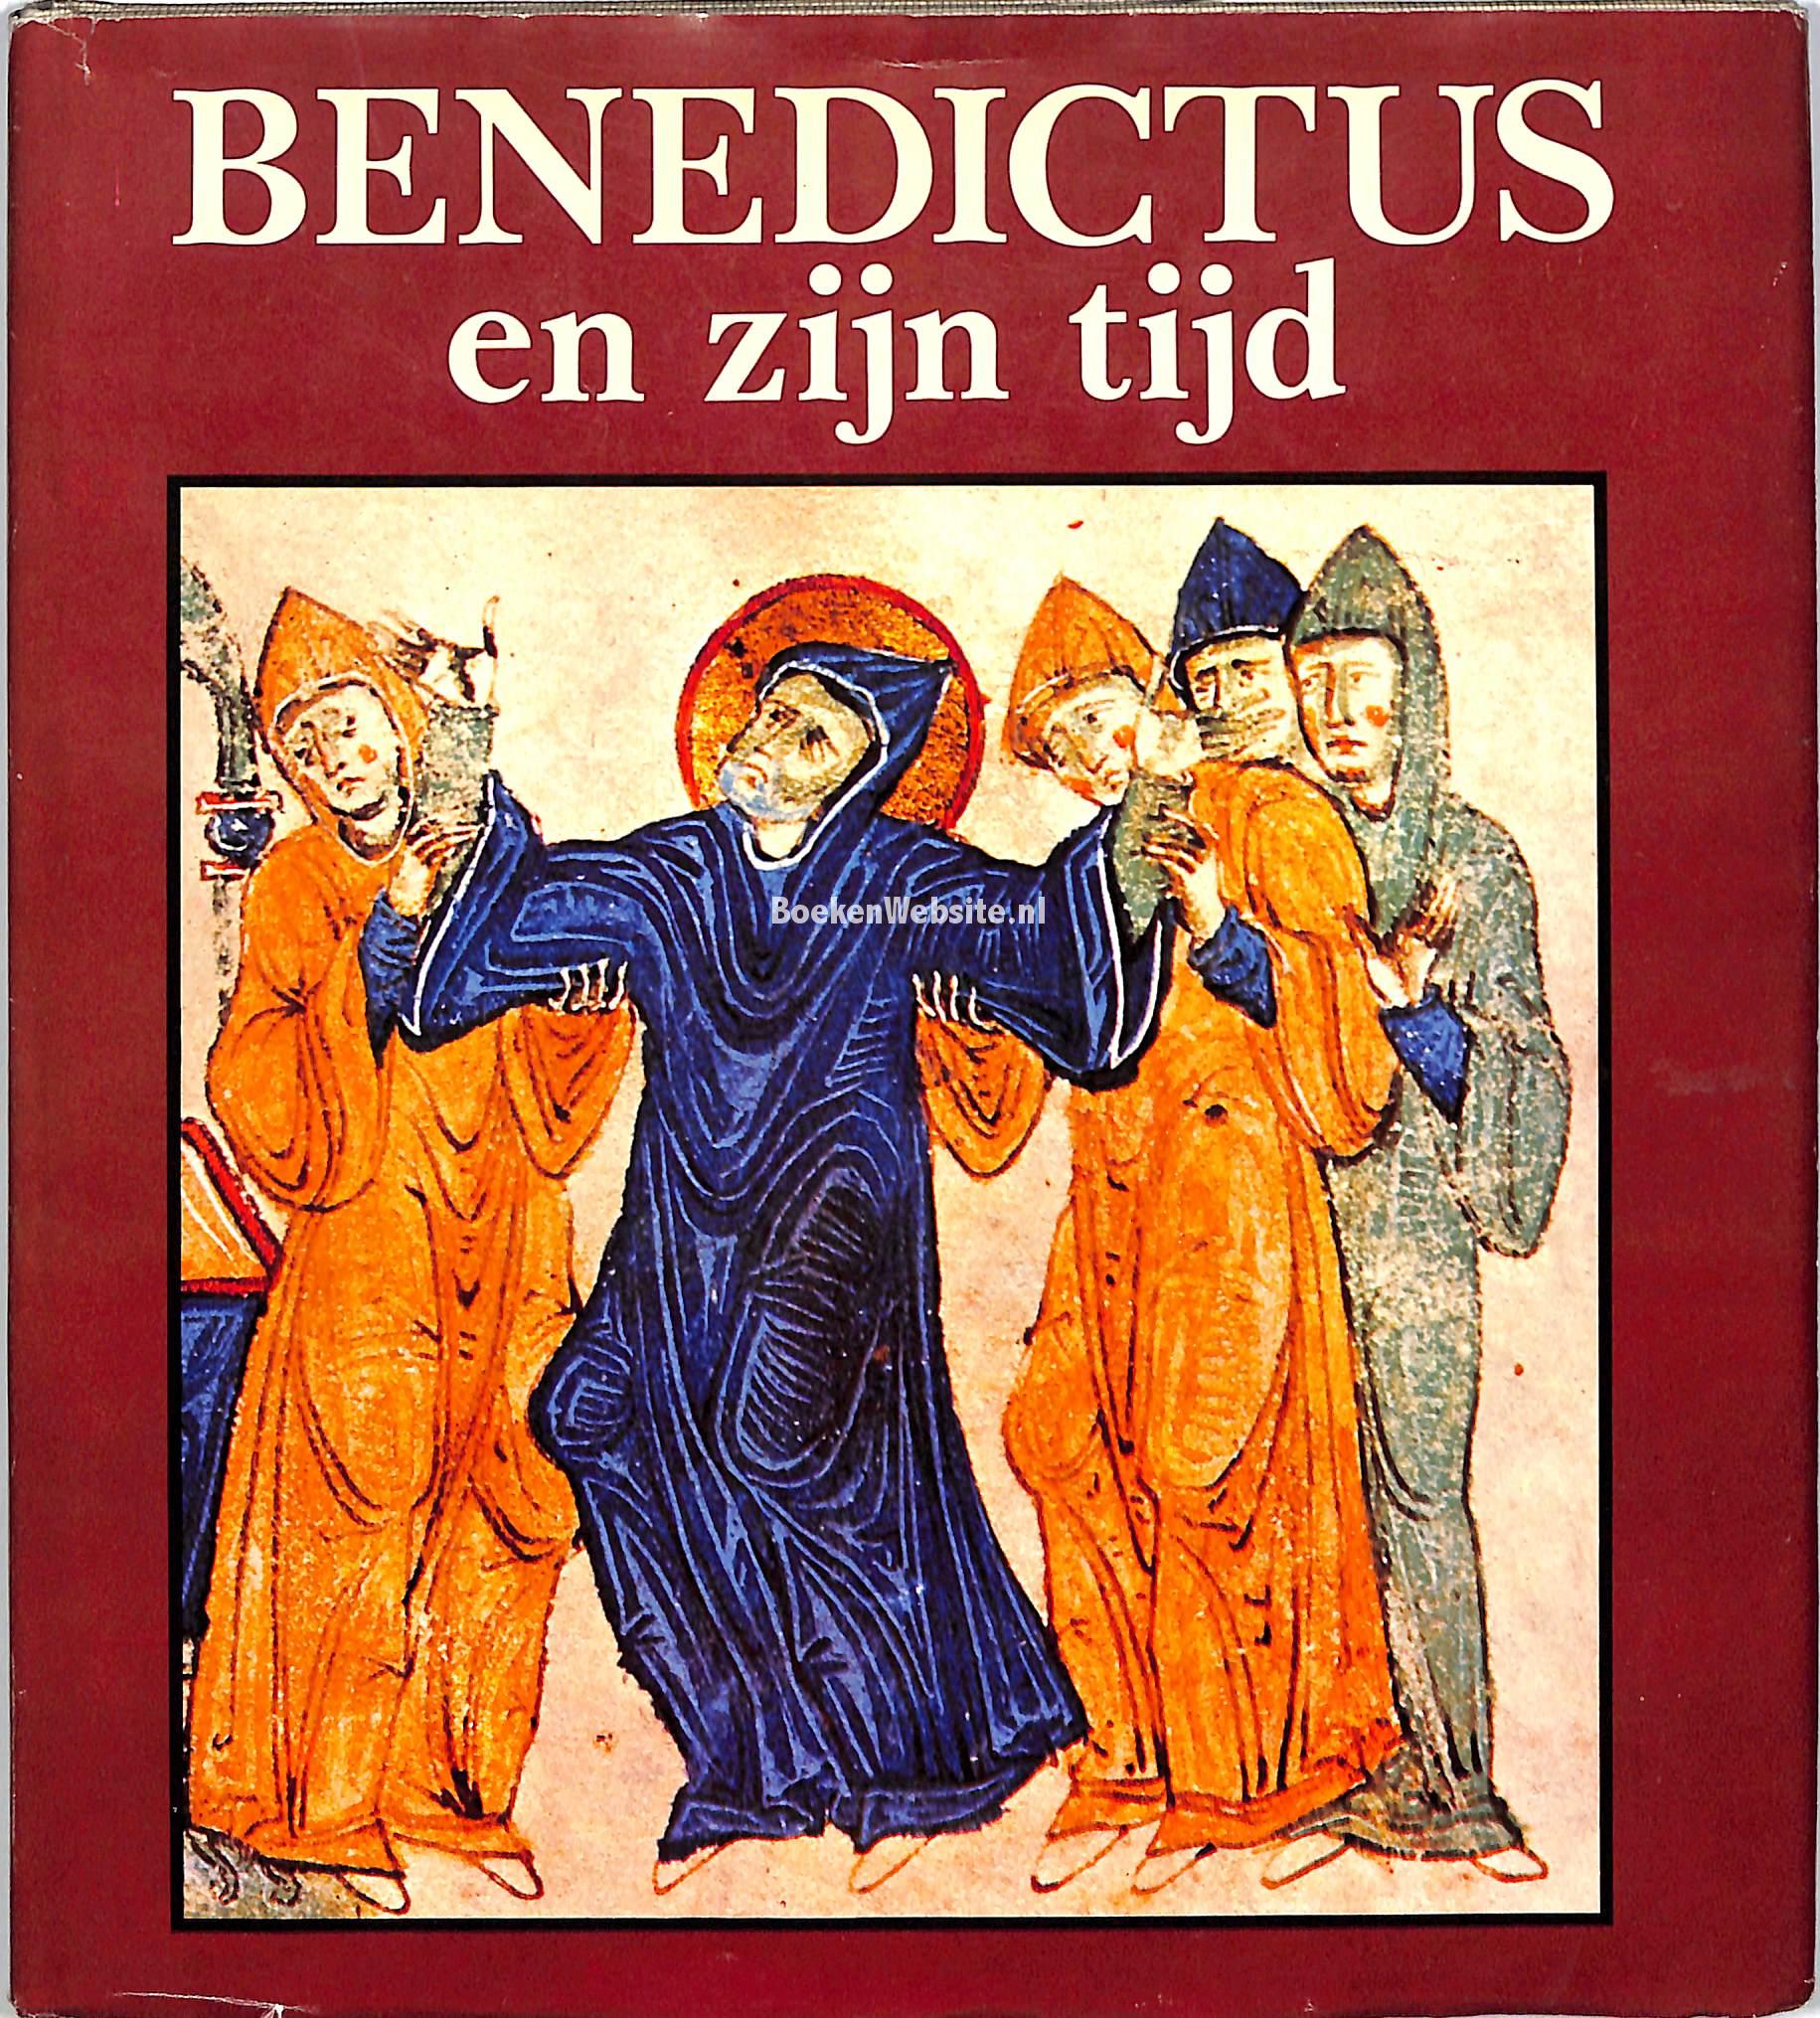 Benedictus en zijn tijd